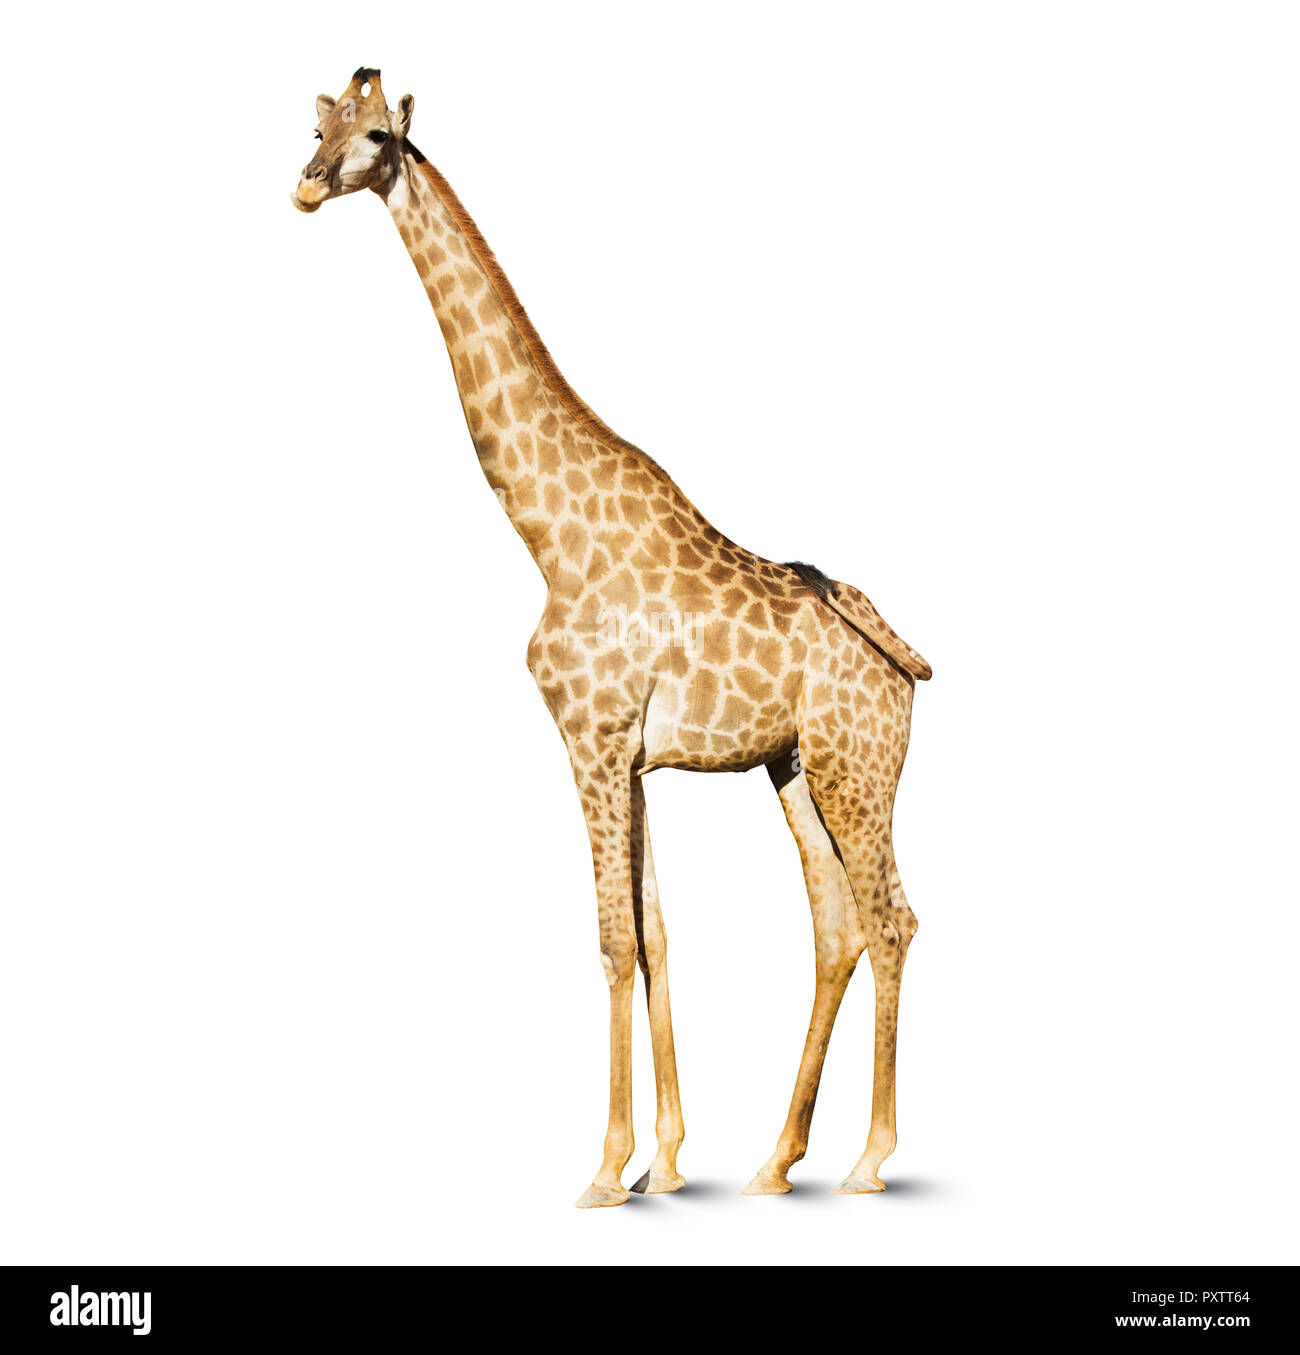 Giraffe Kopf auf weißem Hintergrund, einen großen afrikanischen Säugetier mit einem sehr langen Hals und Vorderläufe, in einen Mantel gemusterten mit braunen Flecken separ Stockfoto